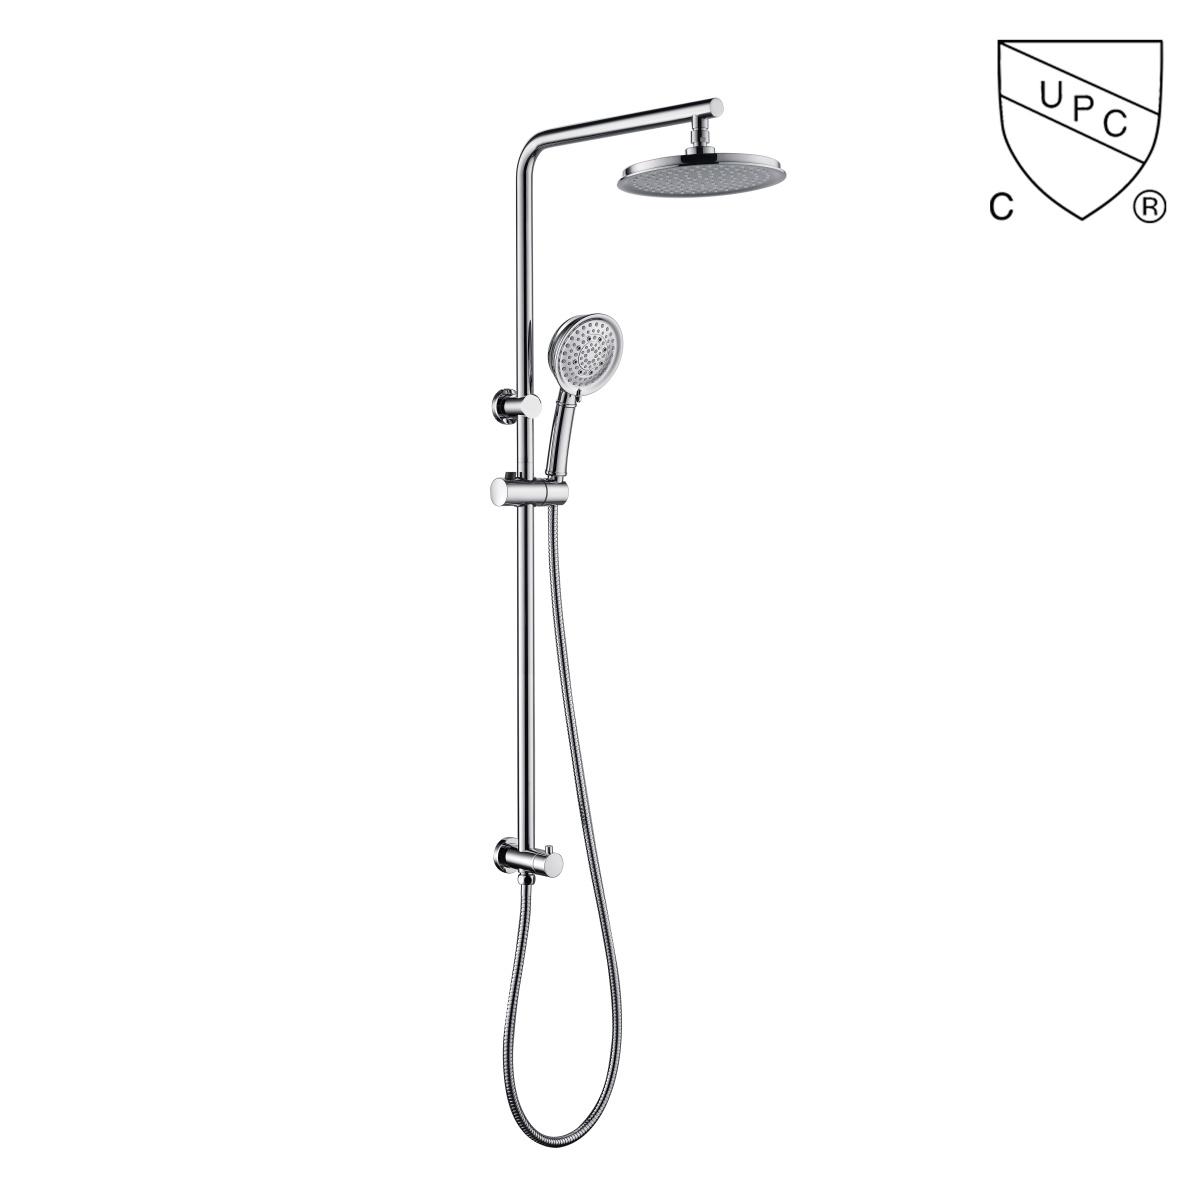 DA310020CP UPC, kit doccia certificati CUPC, set doccia a pioggia, set doccia scorrevole;